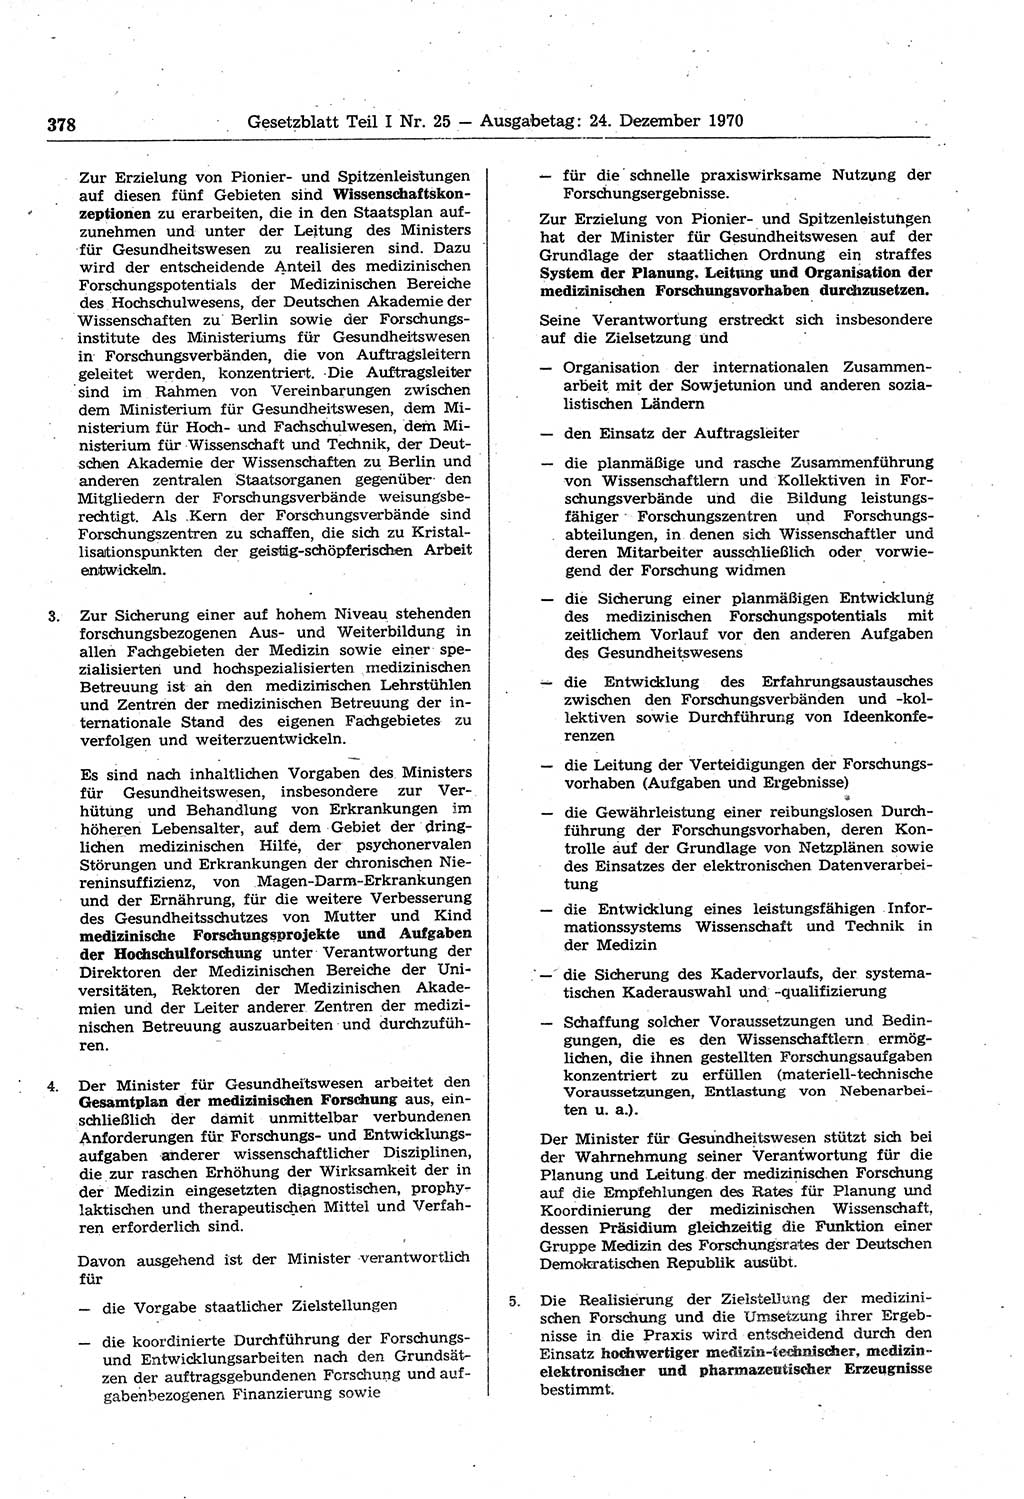 Gesetzblatt (GBl.) der Deutschen Demokratischen Republik (DDR) Teil Ⅰ 1970, Seite 378 (GBl. DDR Ⅰ 1970, S. 378)